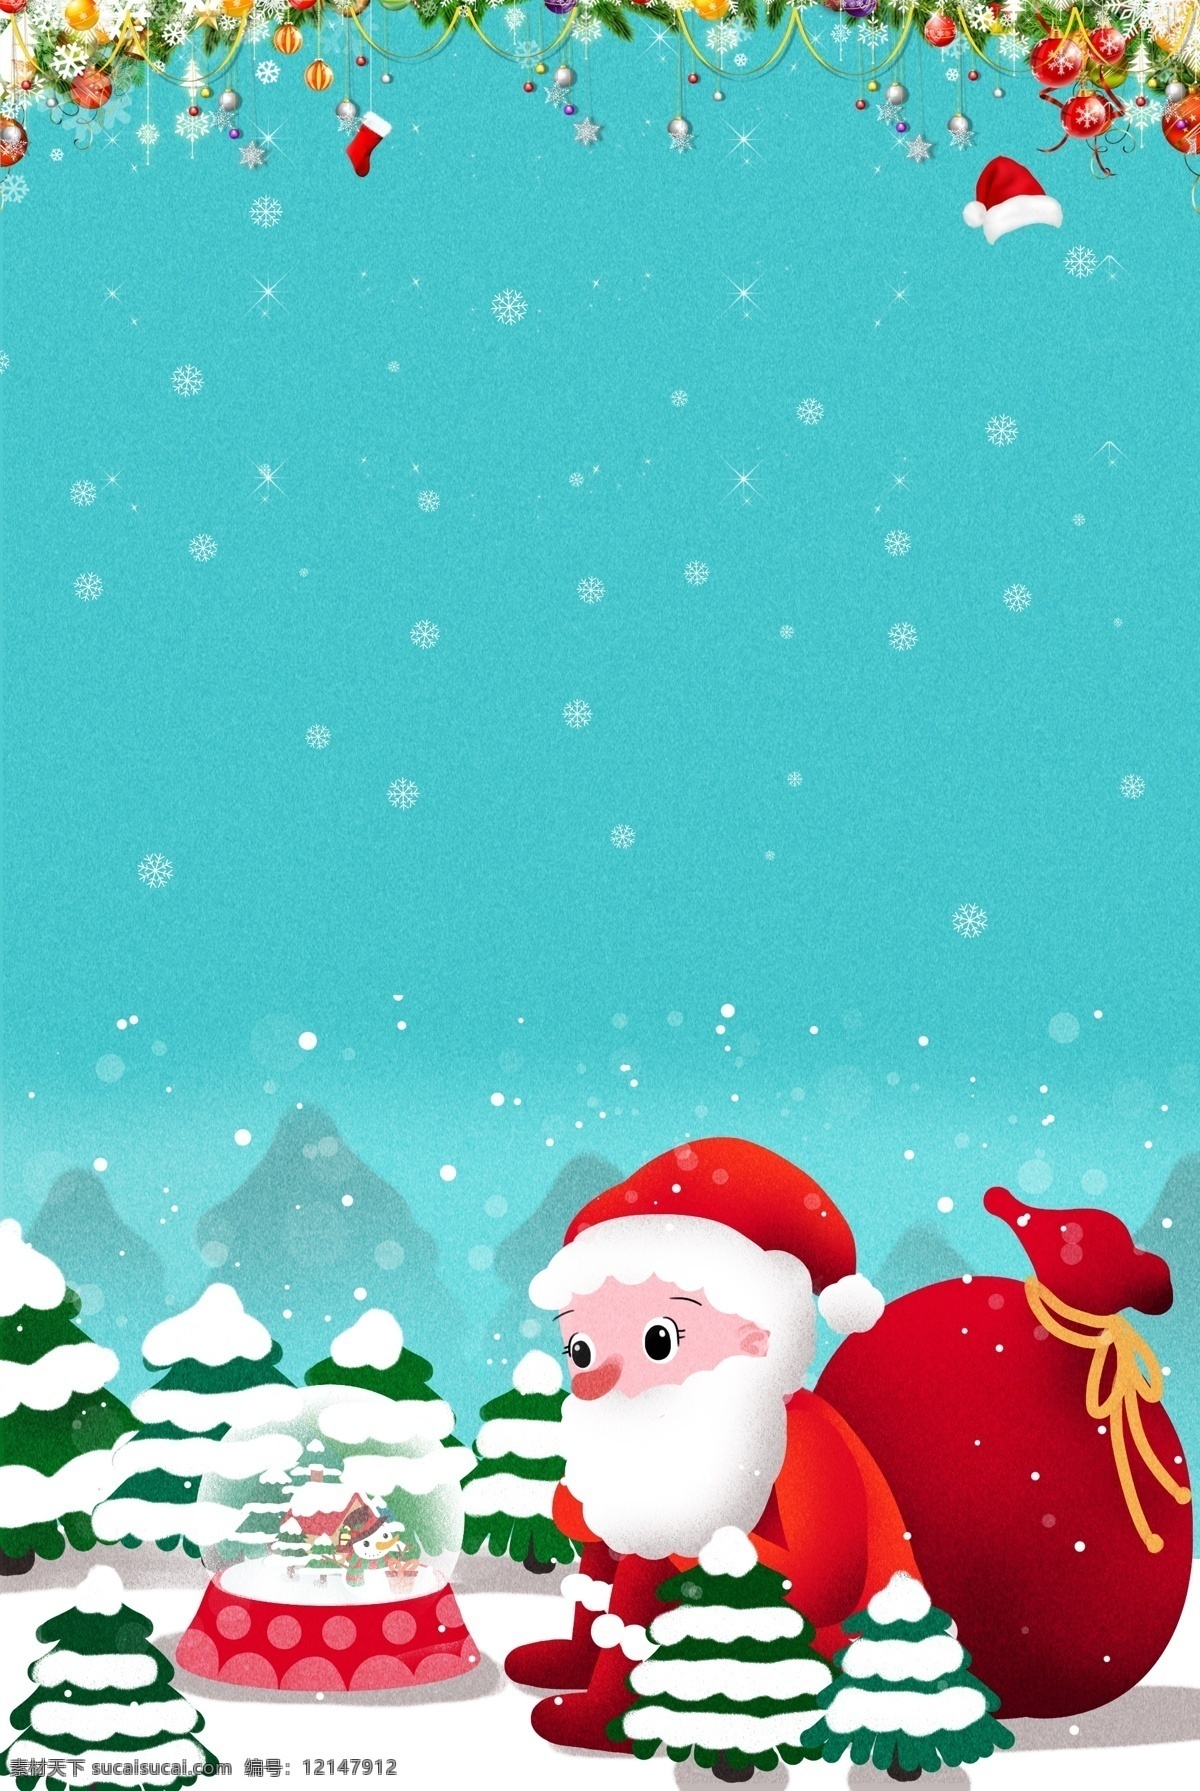 清新 蓝色 手绘 卡通 圣诞节 背景 图 梦幻 可爱 礼盒 圣诞老人 扁平 雪人 雪花 袜子 广告背景